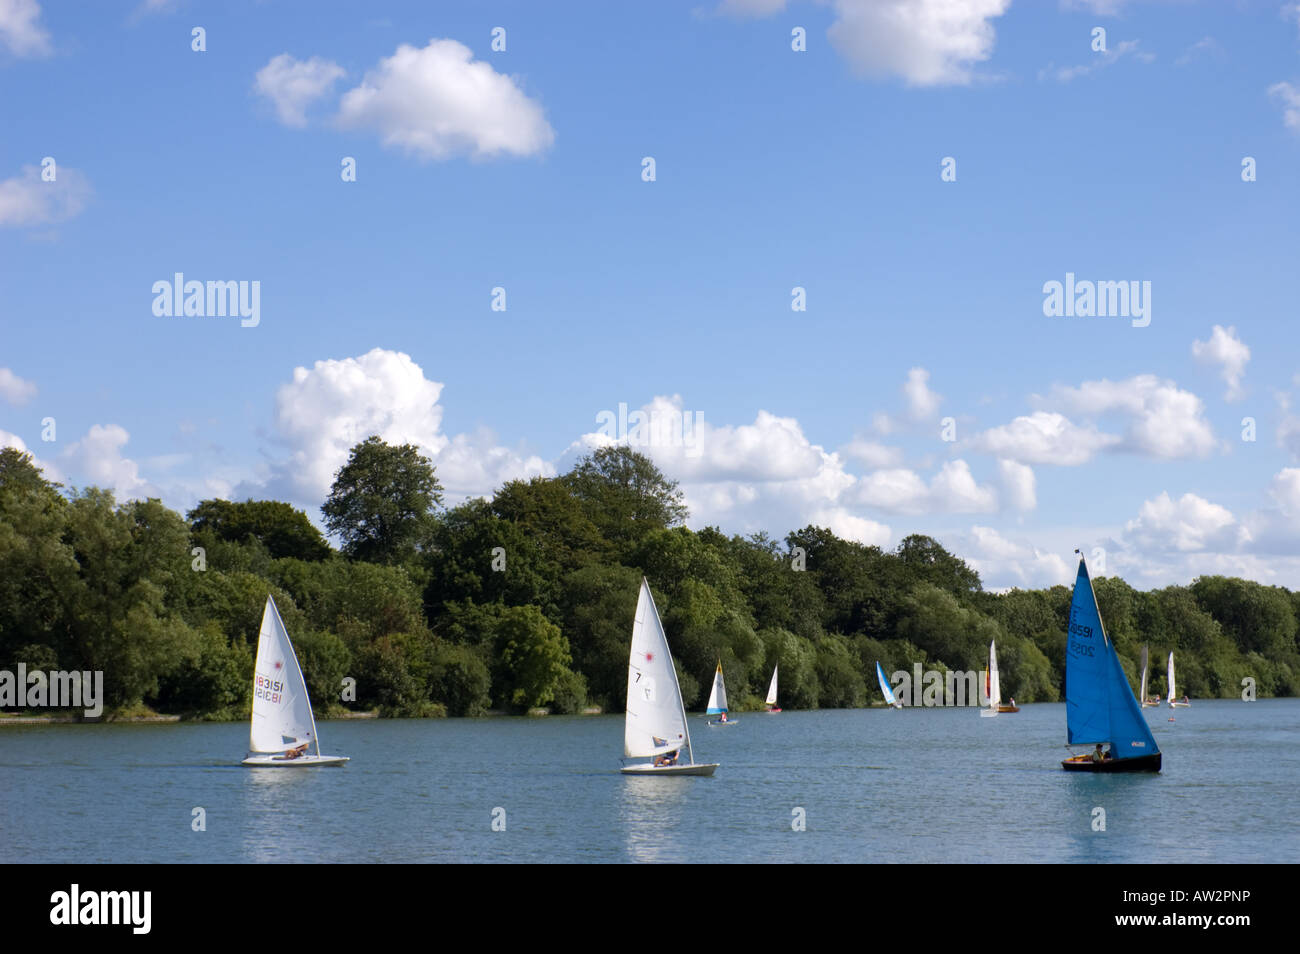 Bateaux à voile sur le lac Moulin, Earlswood Lacs, Earlswood, Solihull, West Midlands, England, UK Banque D'Images